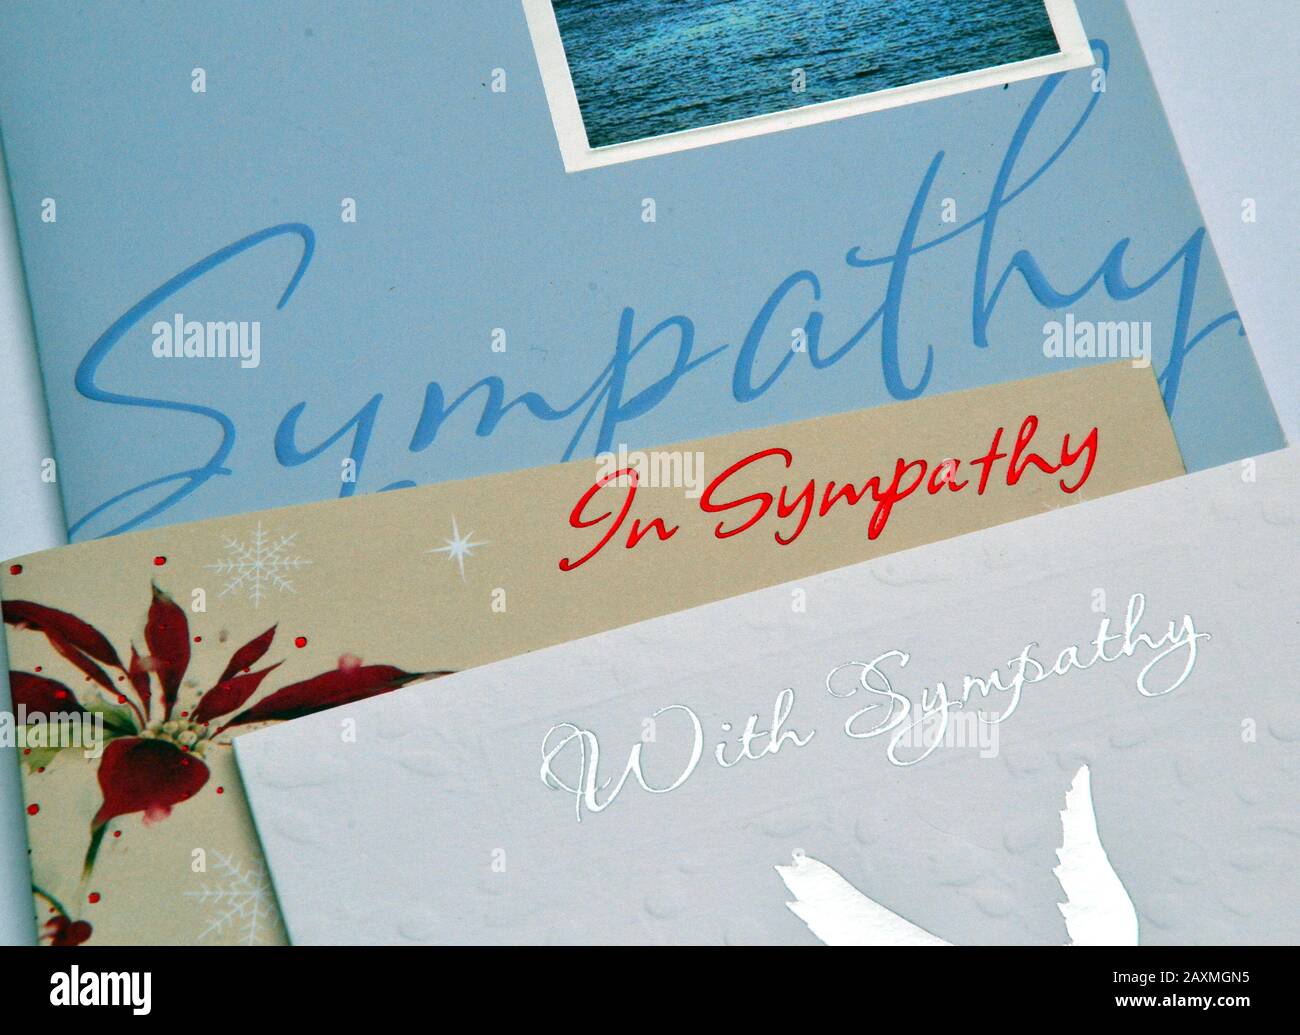 Details zu den Deckblättern von drei "Sympathiekarten", die nach einem Trauerfall verschickt wurden Stockfoto